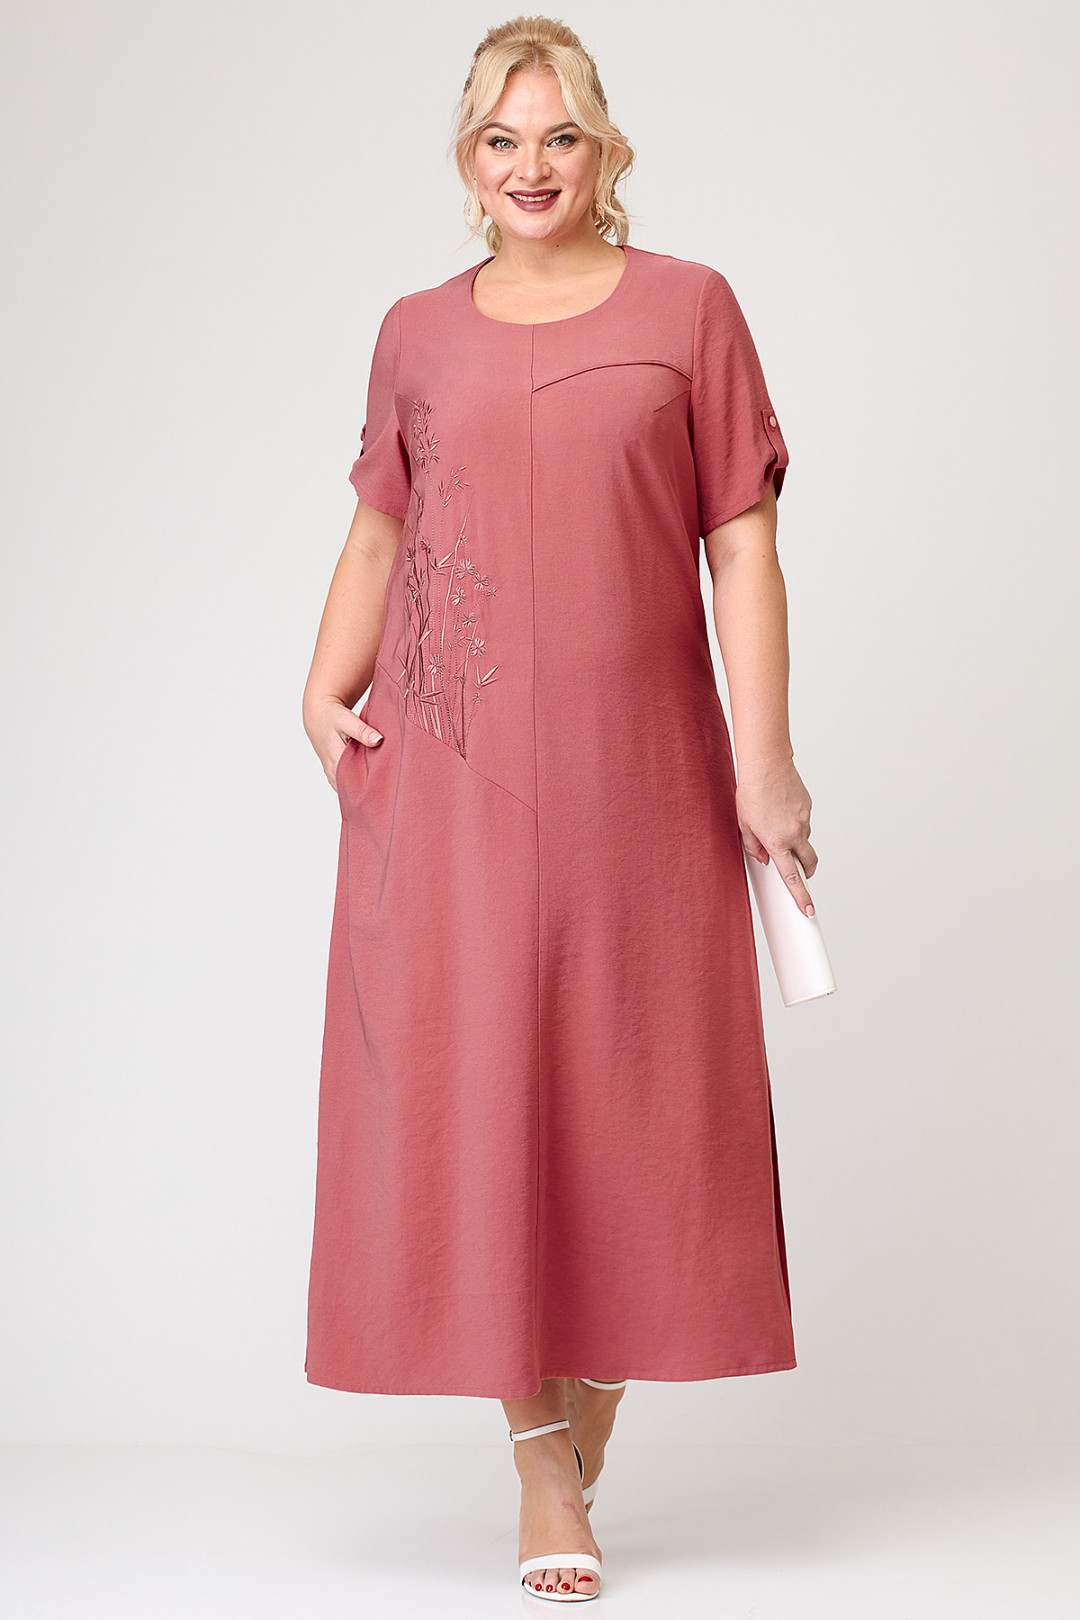 Платье ALGRANDA (Новелла Шарм) A3877-3